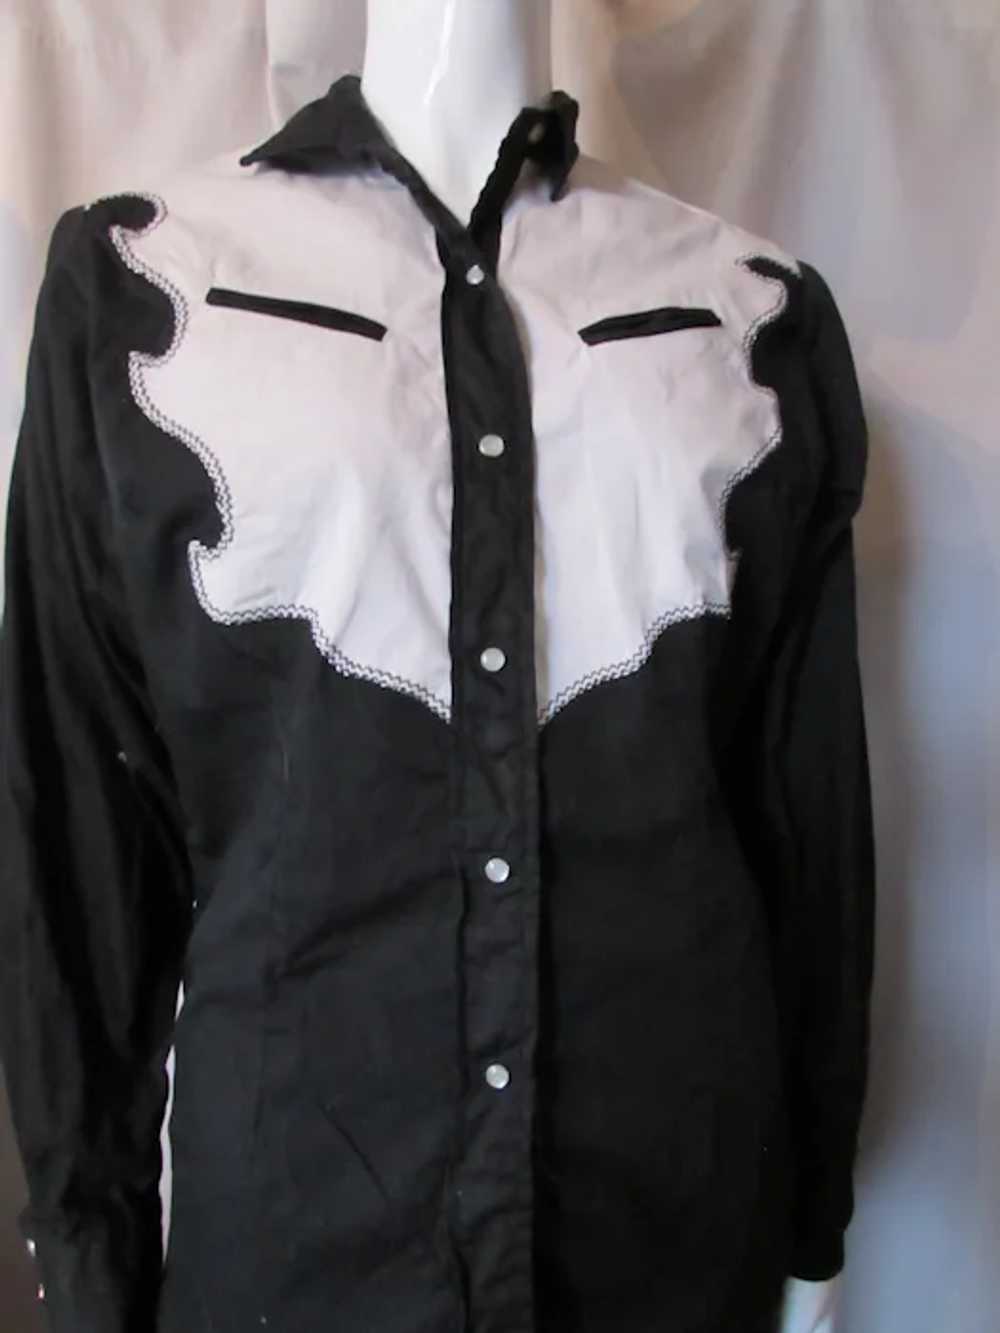 SALE Ladies Western Style Shirt Tem Tex Western S… - image 3